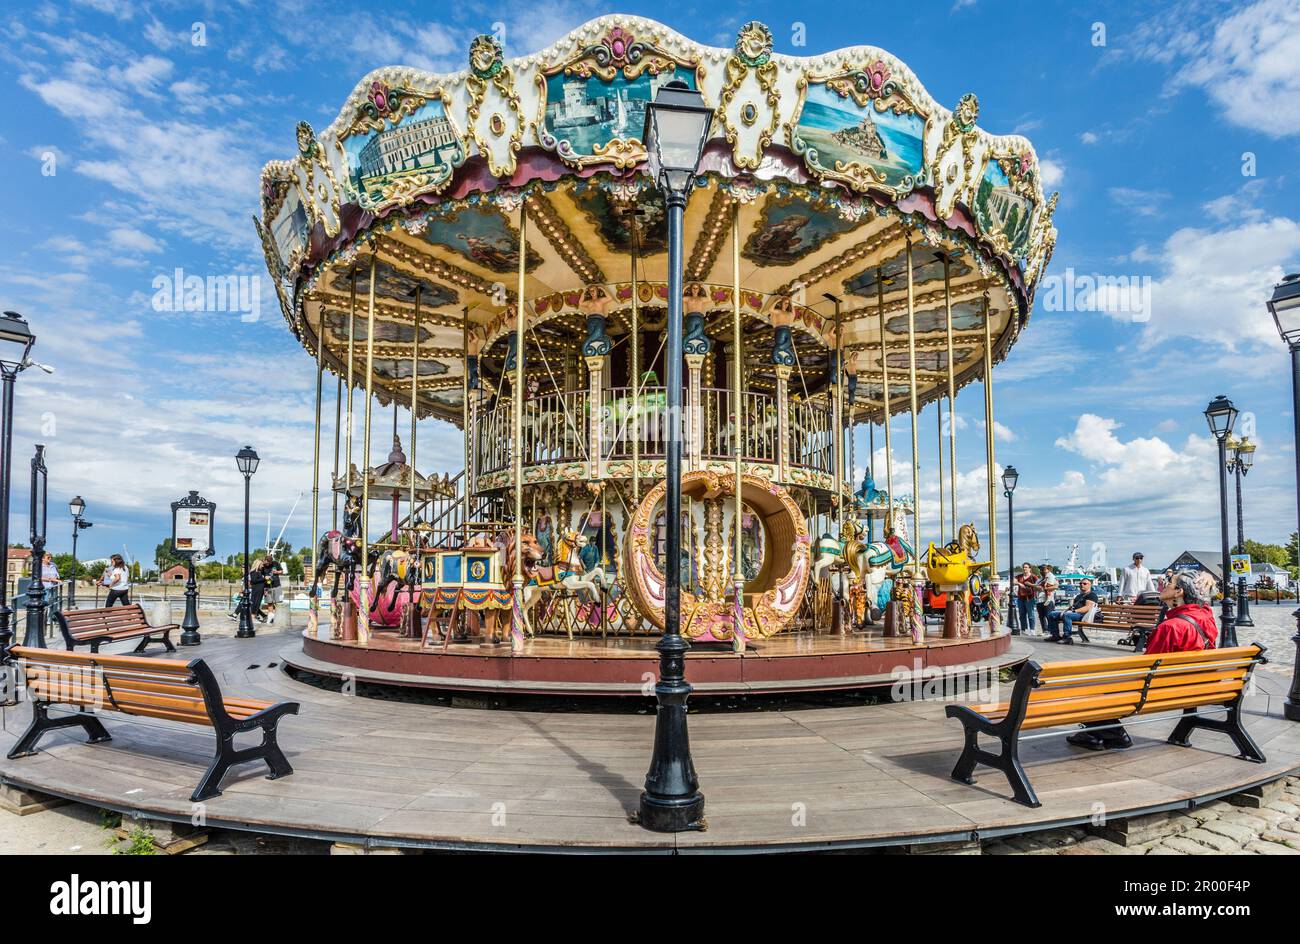 Carrousel de Honfleur, un joyeux tour de table au Vieux-bassin, le vieux port de Honfleur, département du Calvados, Normandie, France Banque D'Images